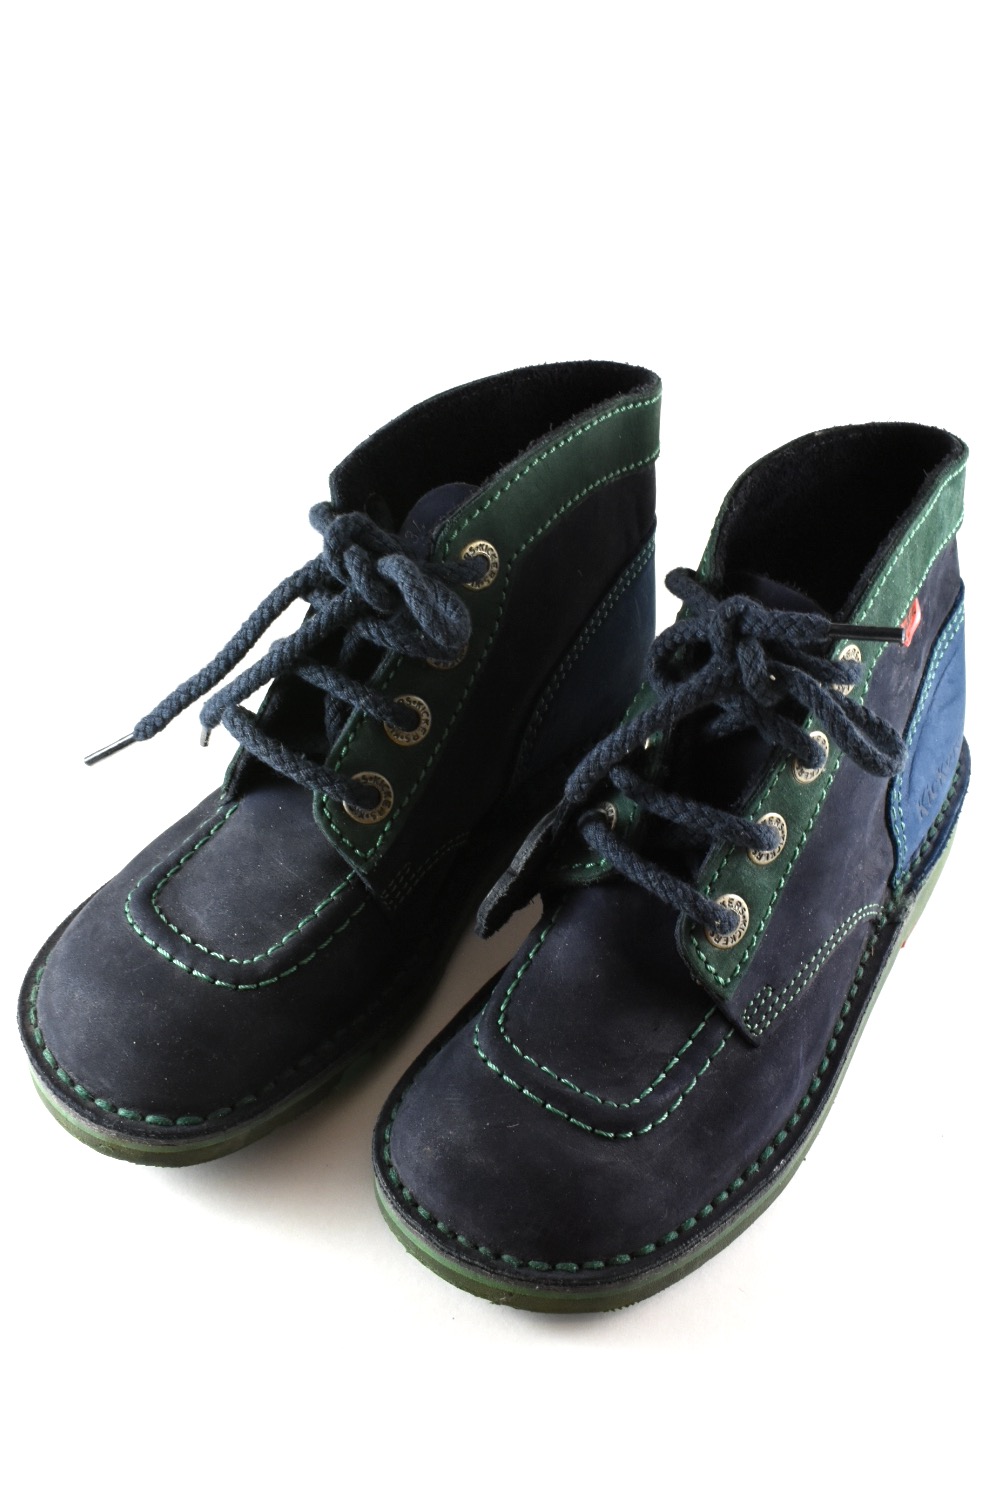 Kickers shoes discount 79% KIDS FASHION Footwear Casual Navy Blue 22                  EU 